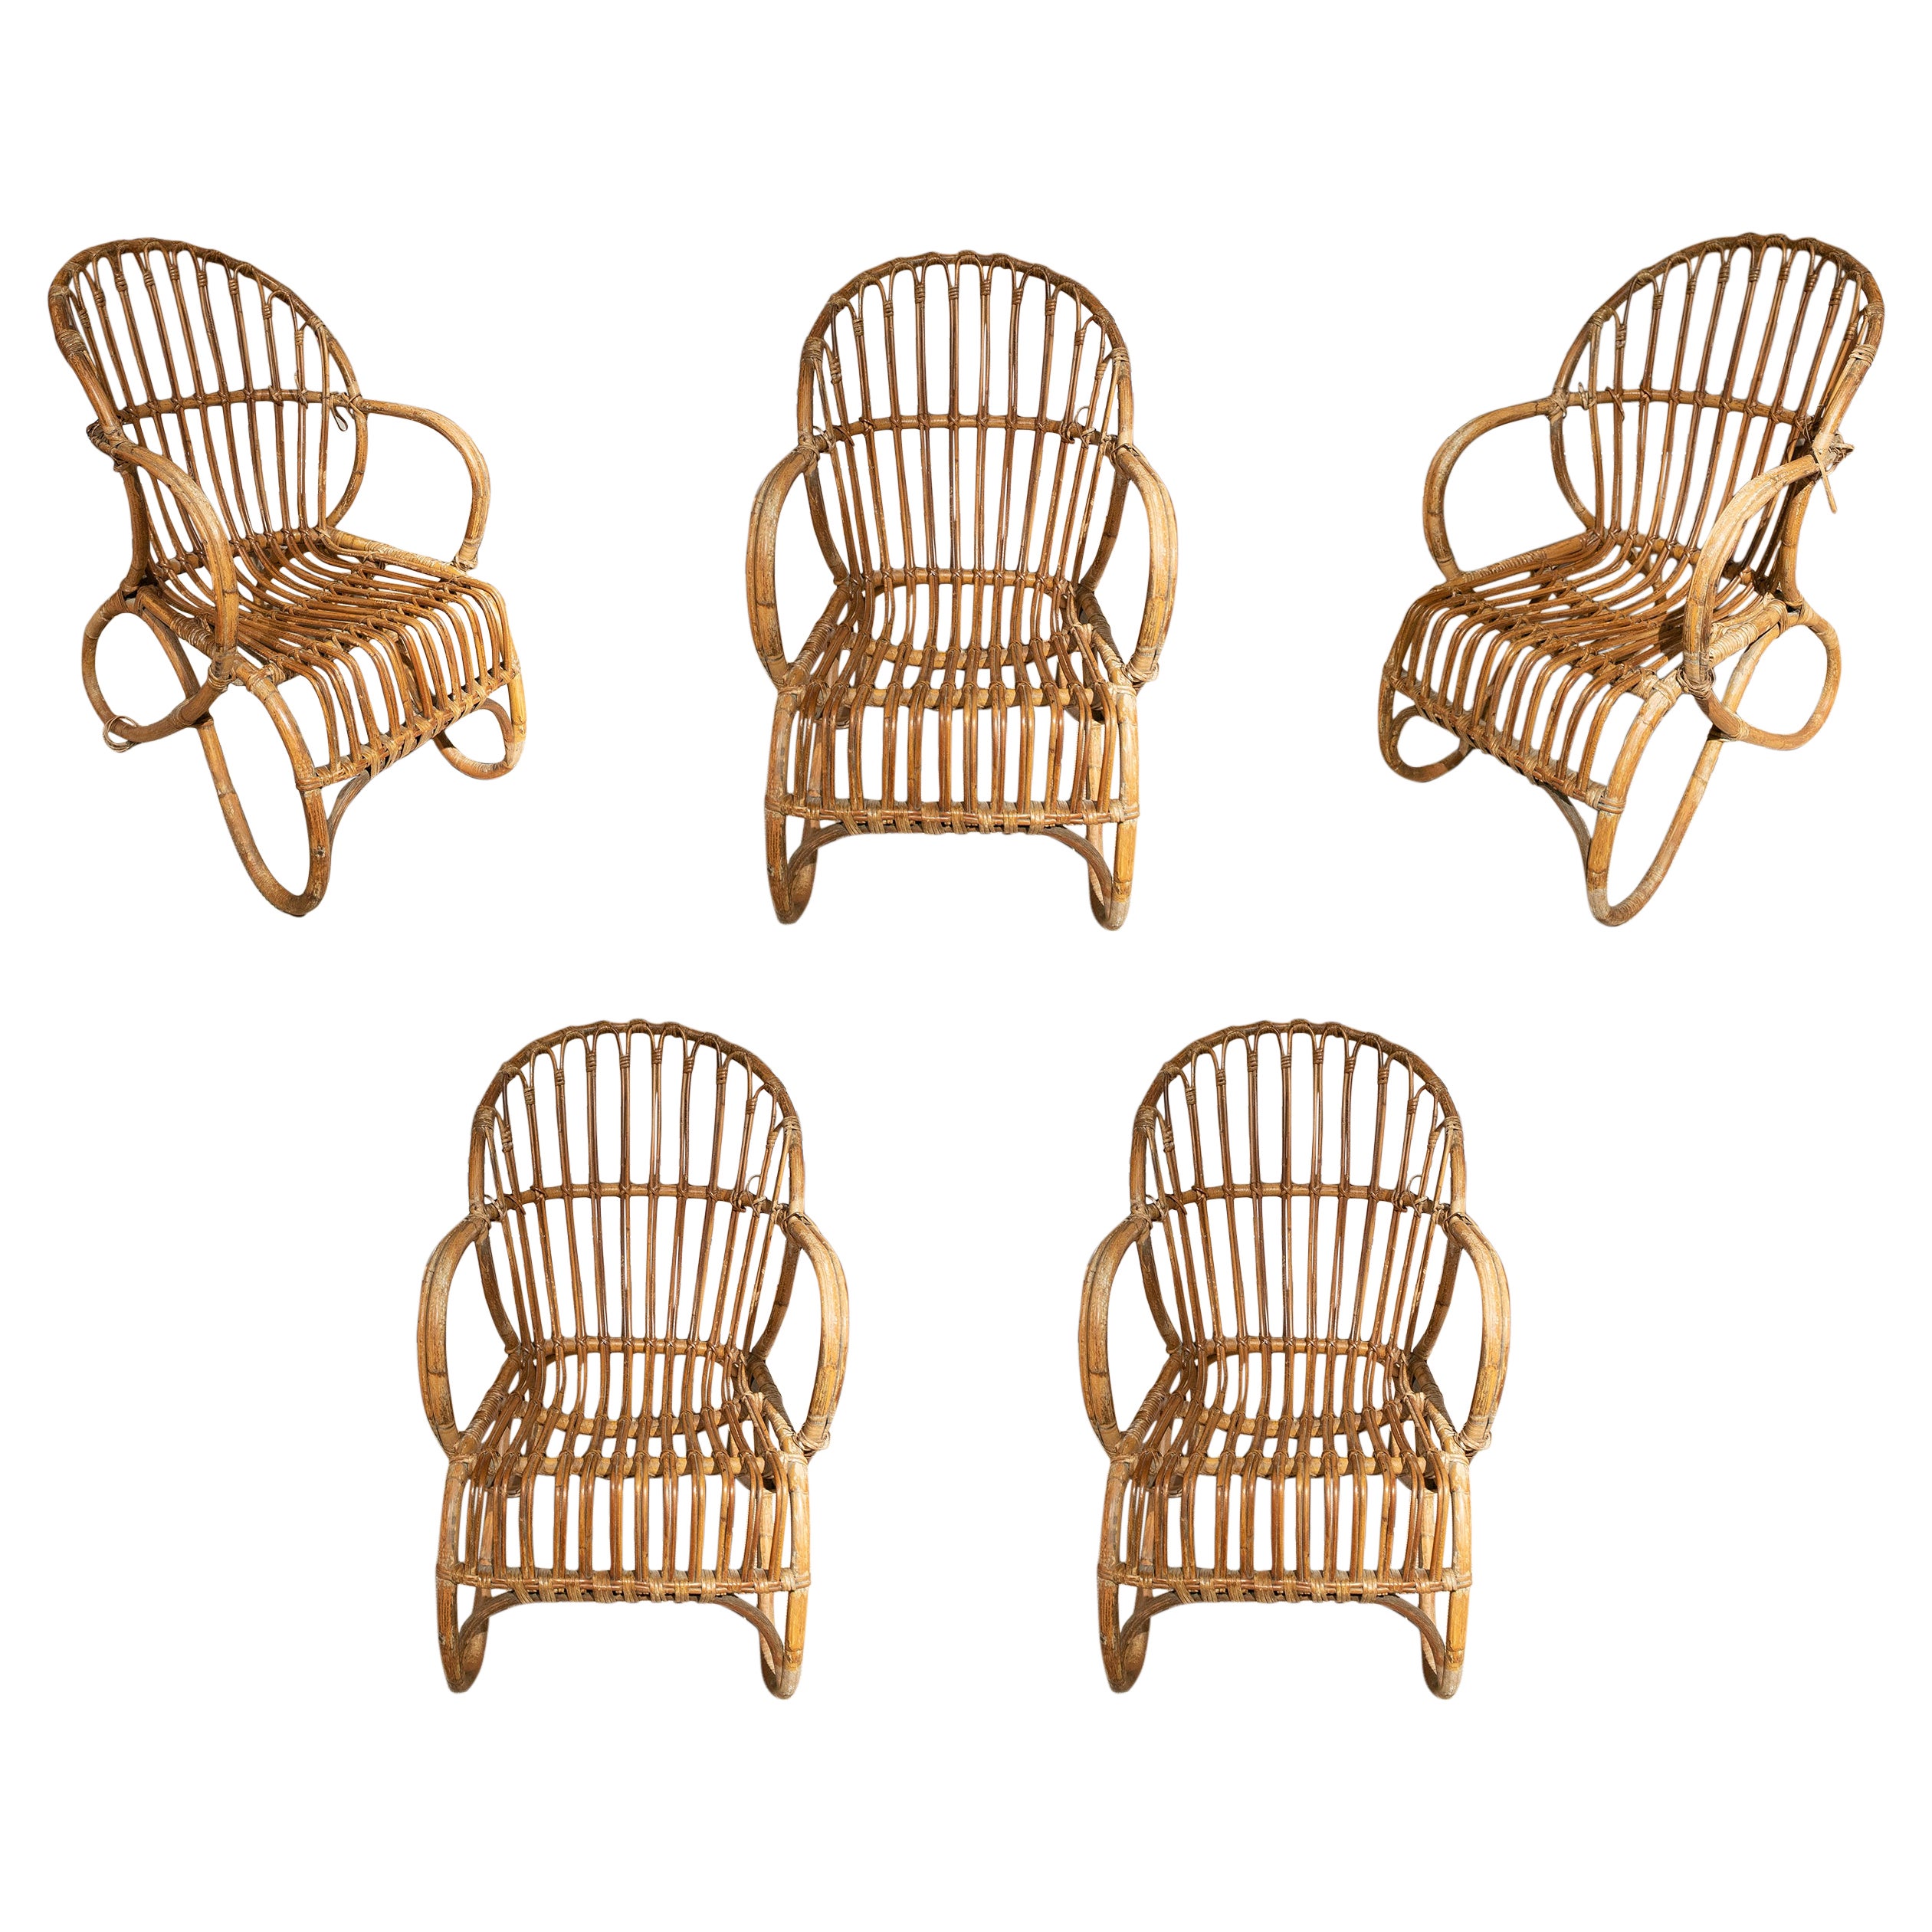 Ensemble de cinq fauteuils espagnols des années 1970 en osier tissé et bambou